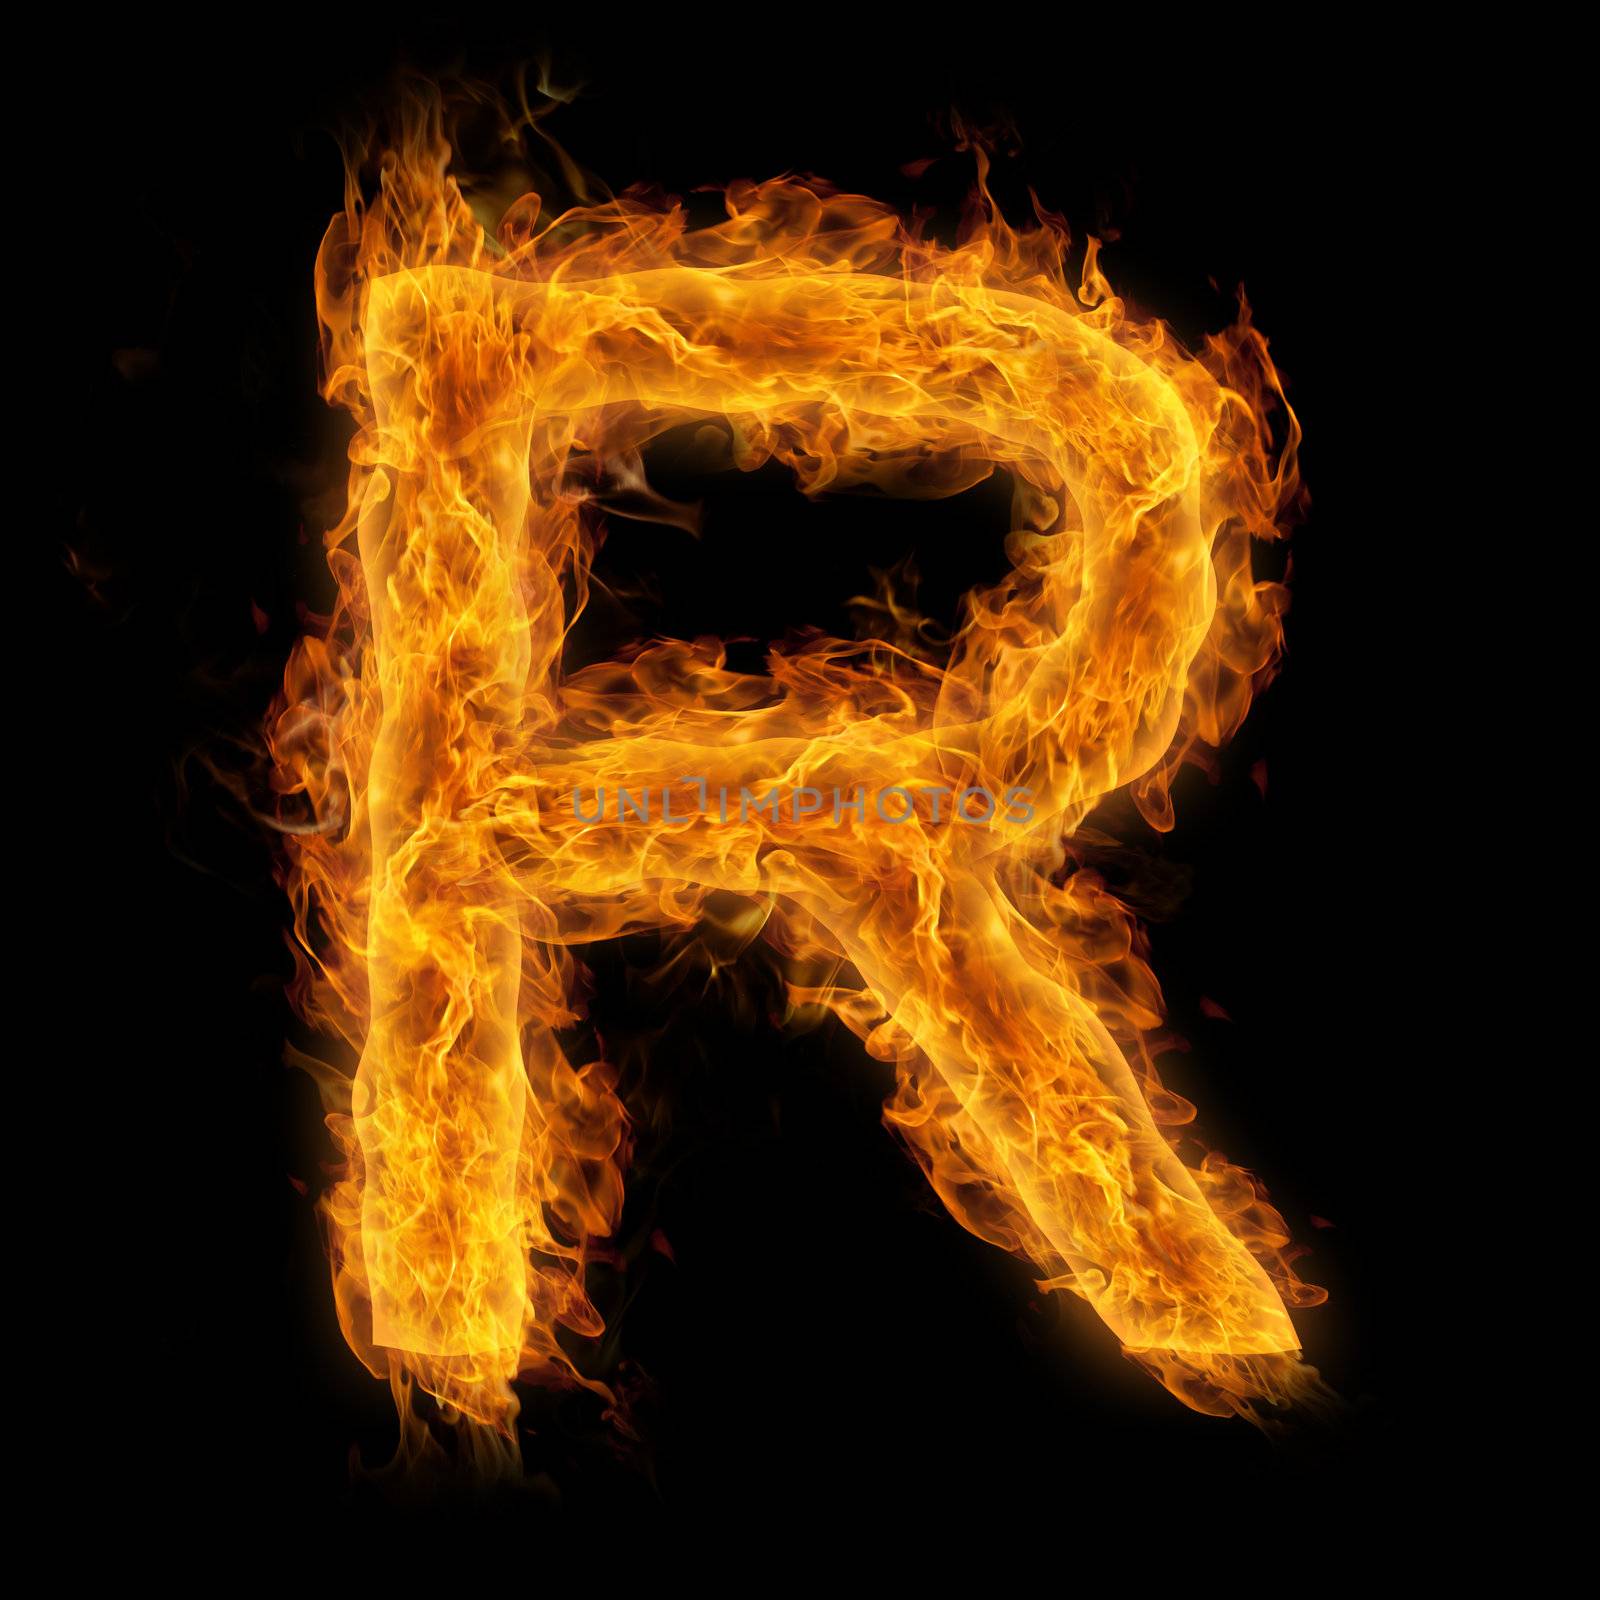 Flaming Letter R by melpomene